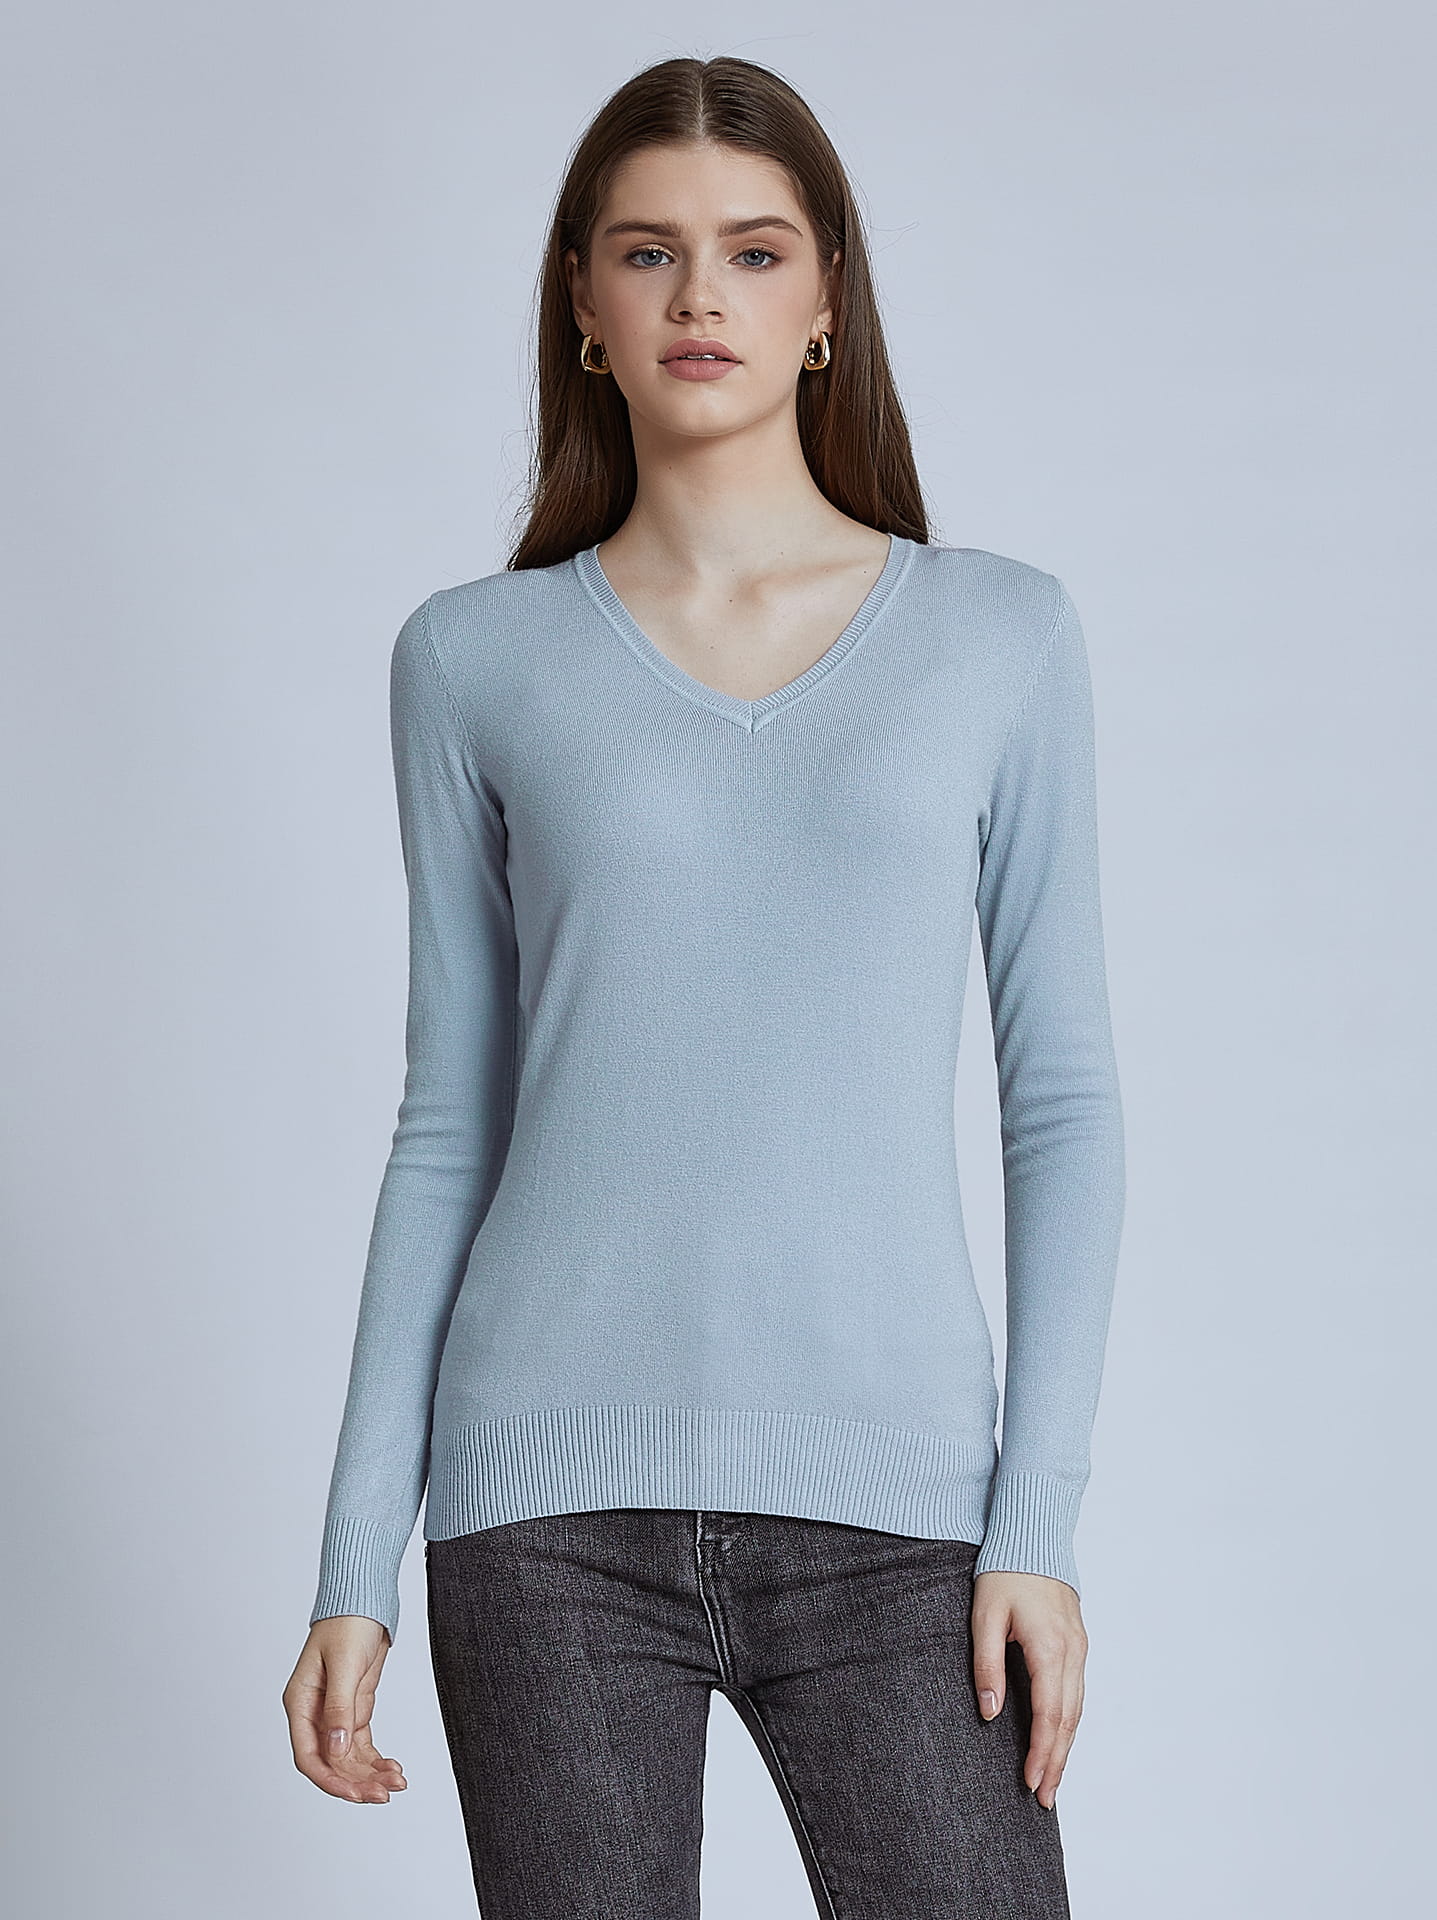 Light Blue V-Neck Sweater For Women